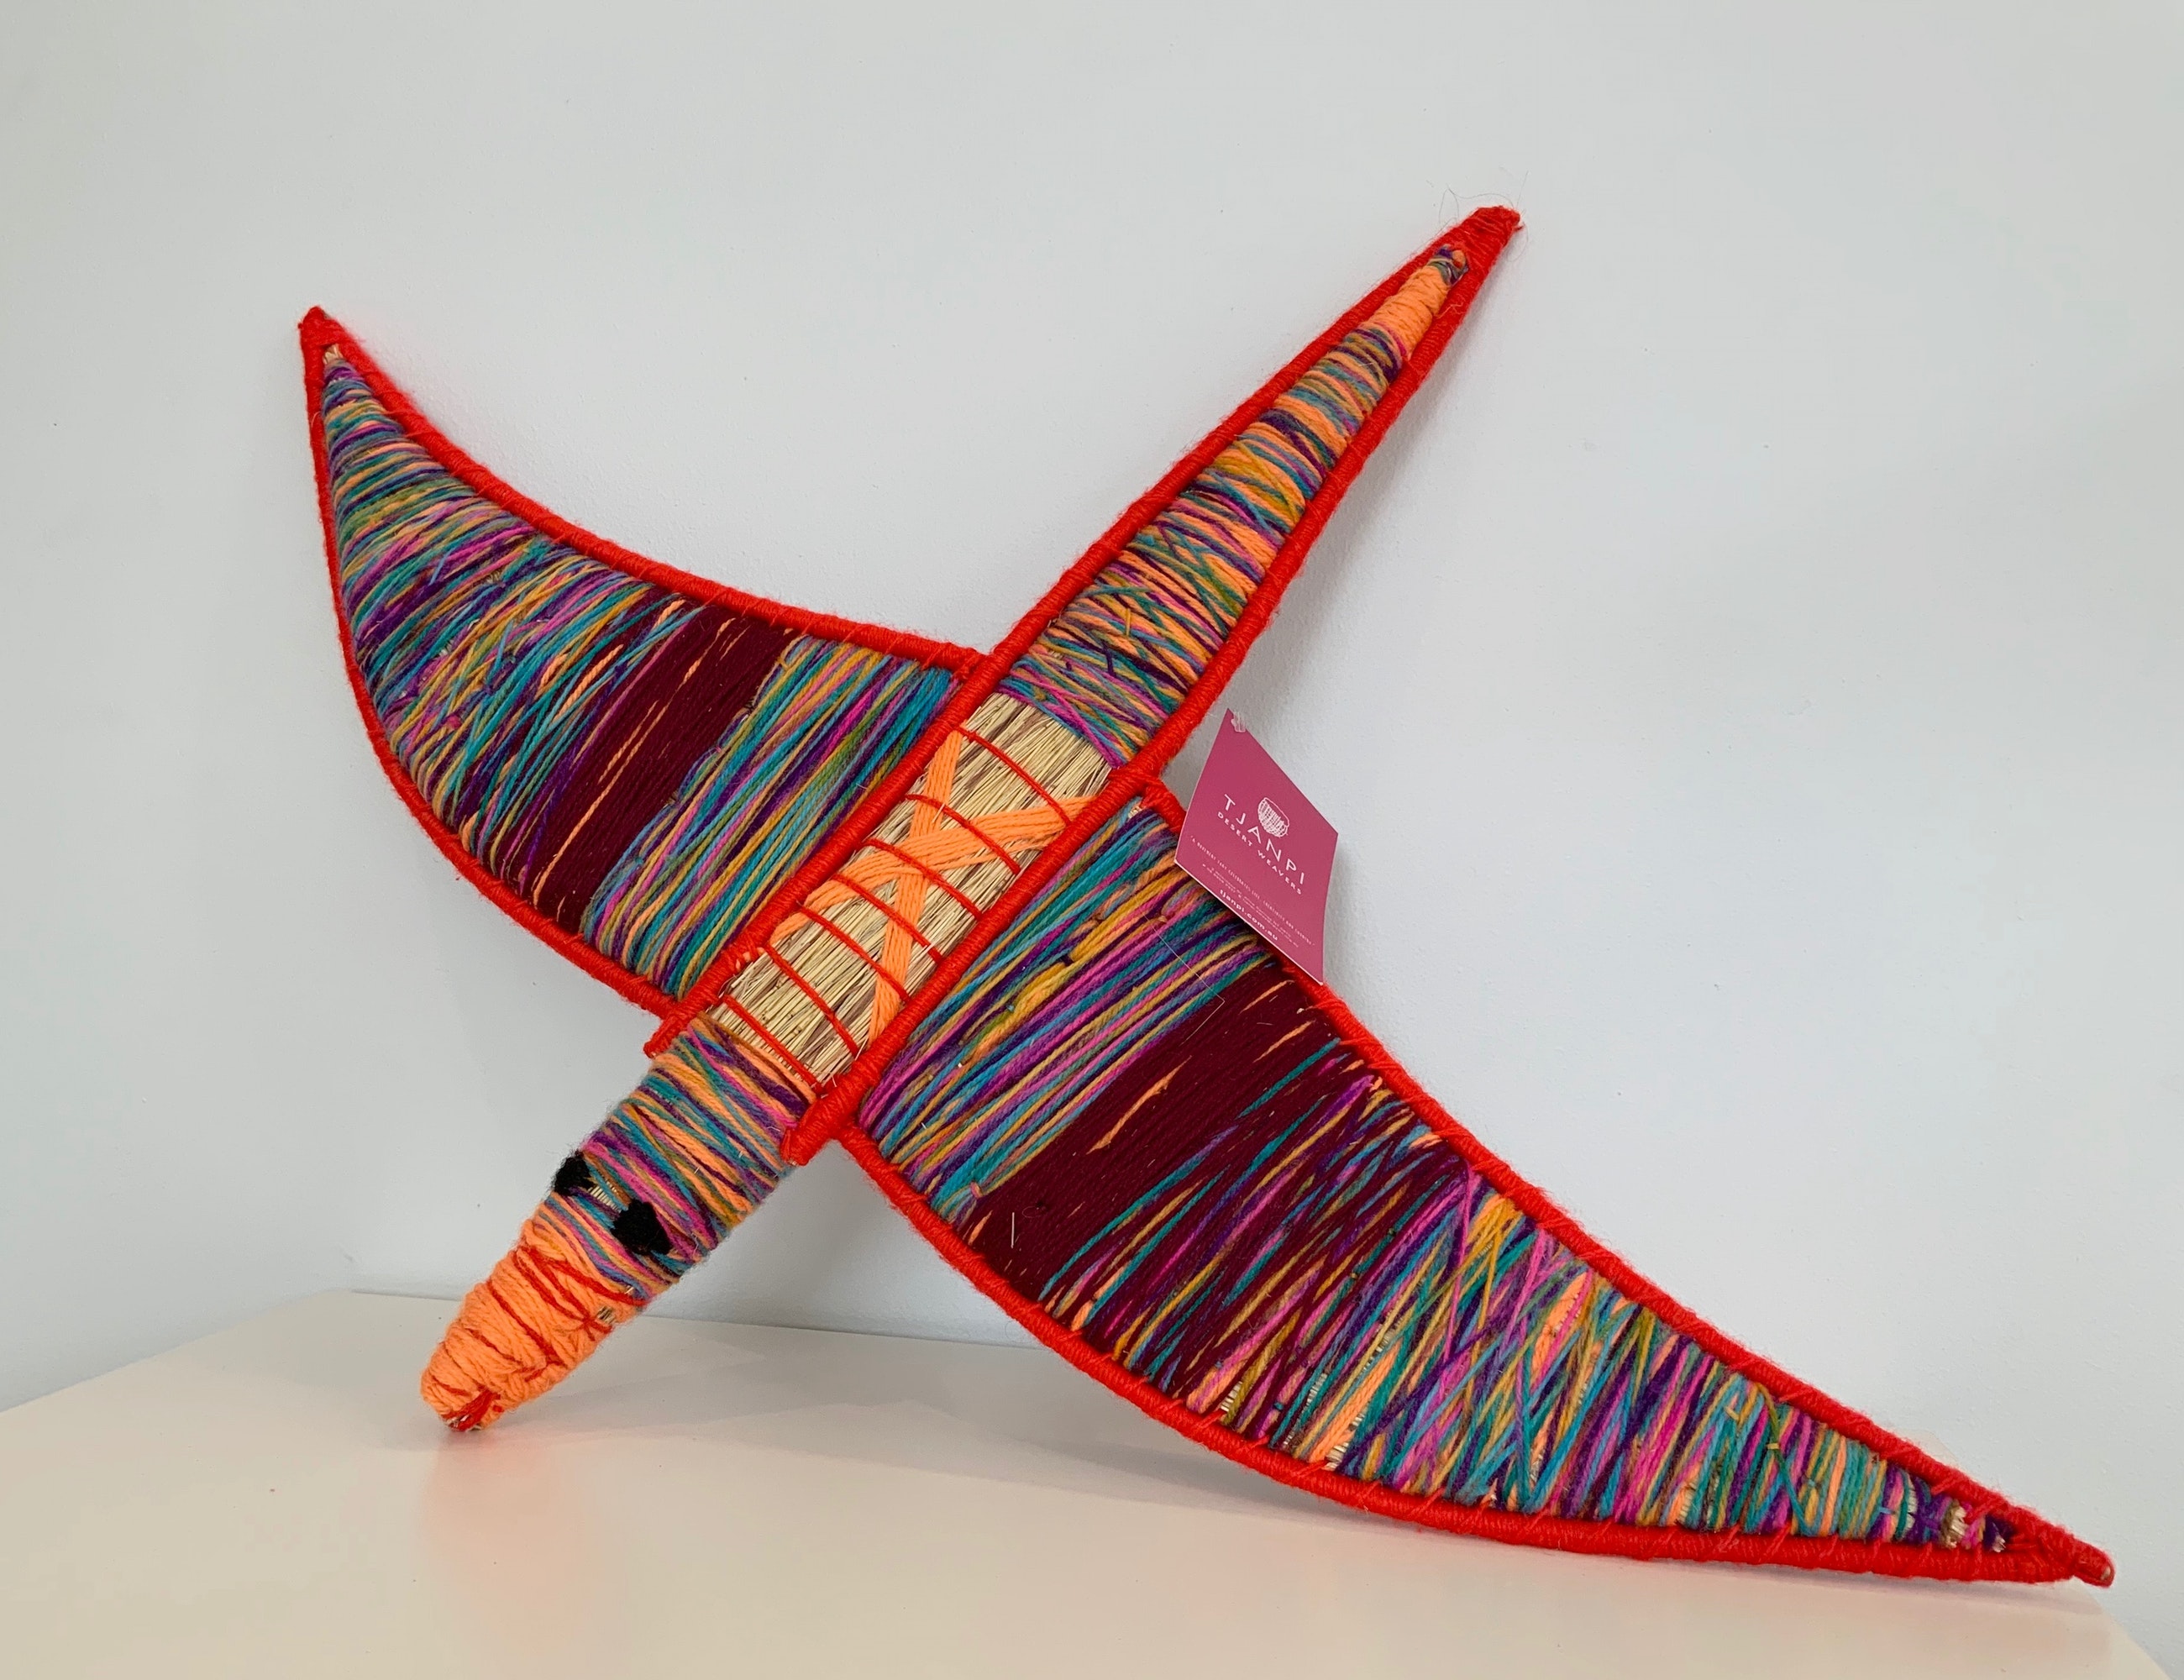 woven Aboriginal sculpture of bird